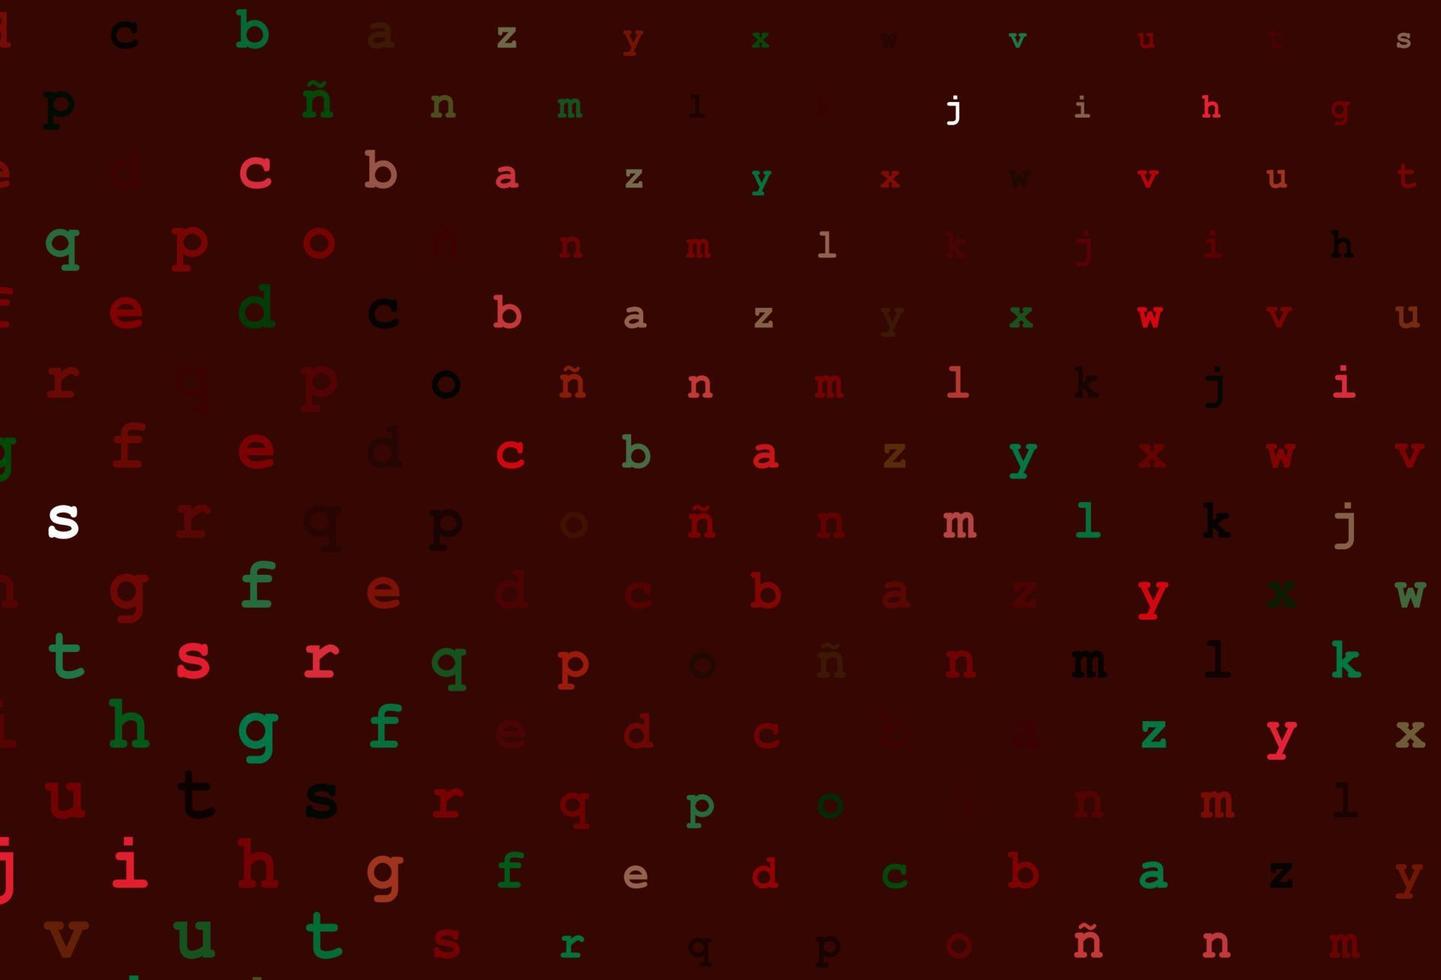 mörkgrön, röd vektorlayout med latinska alfabetet. vektor